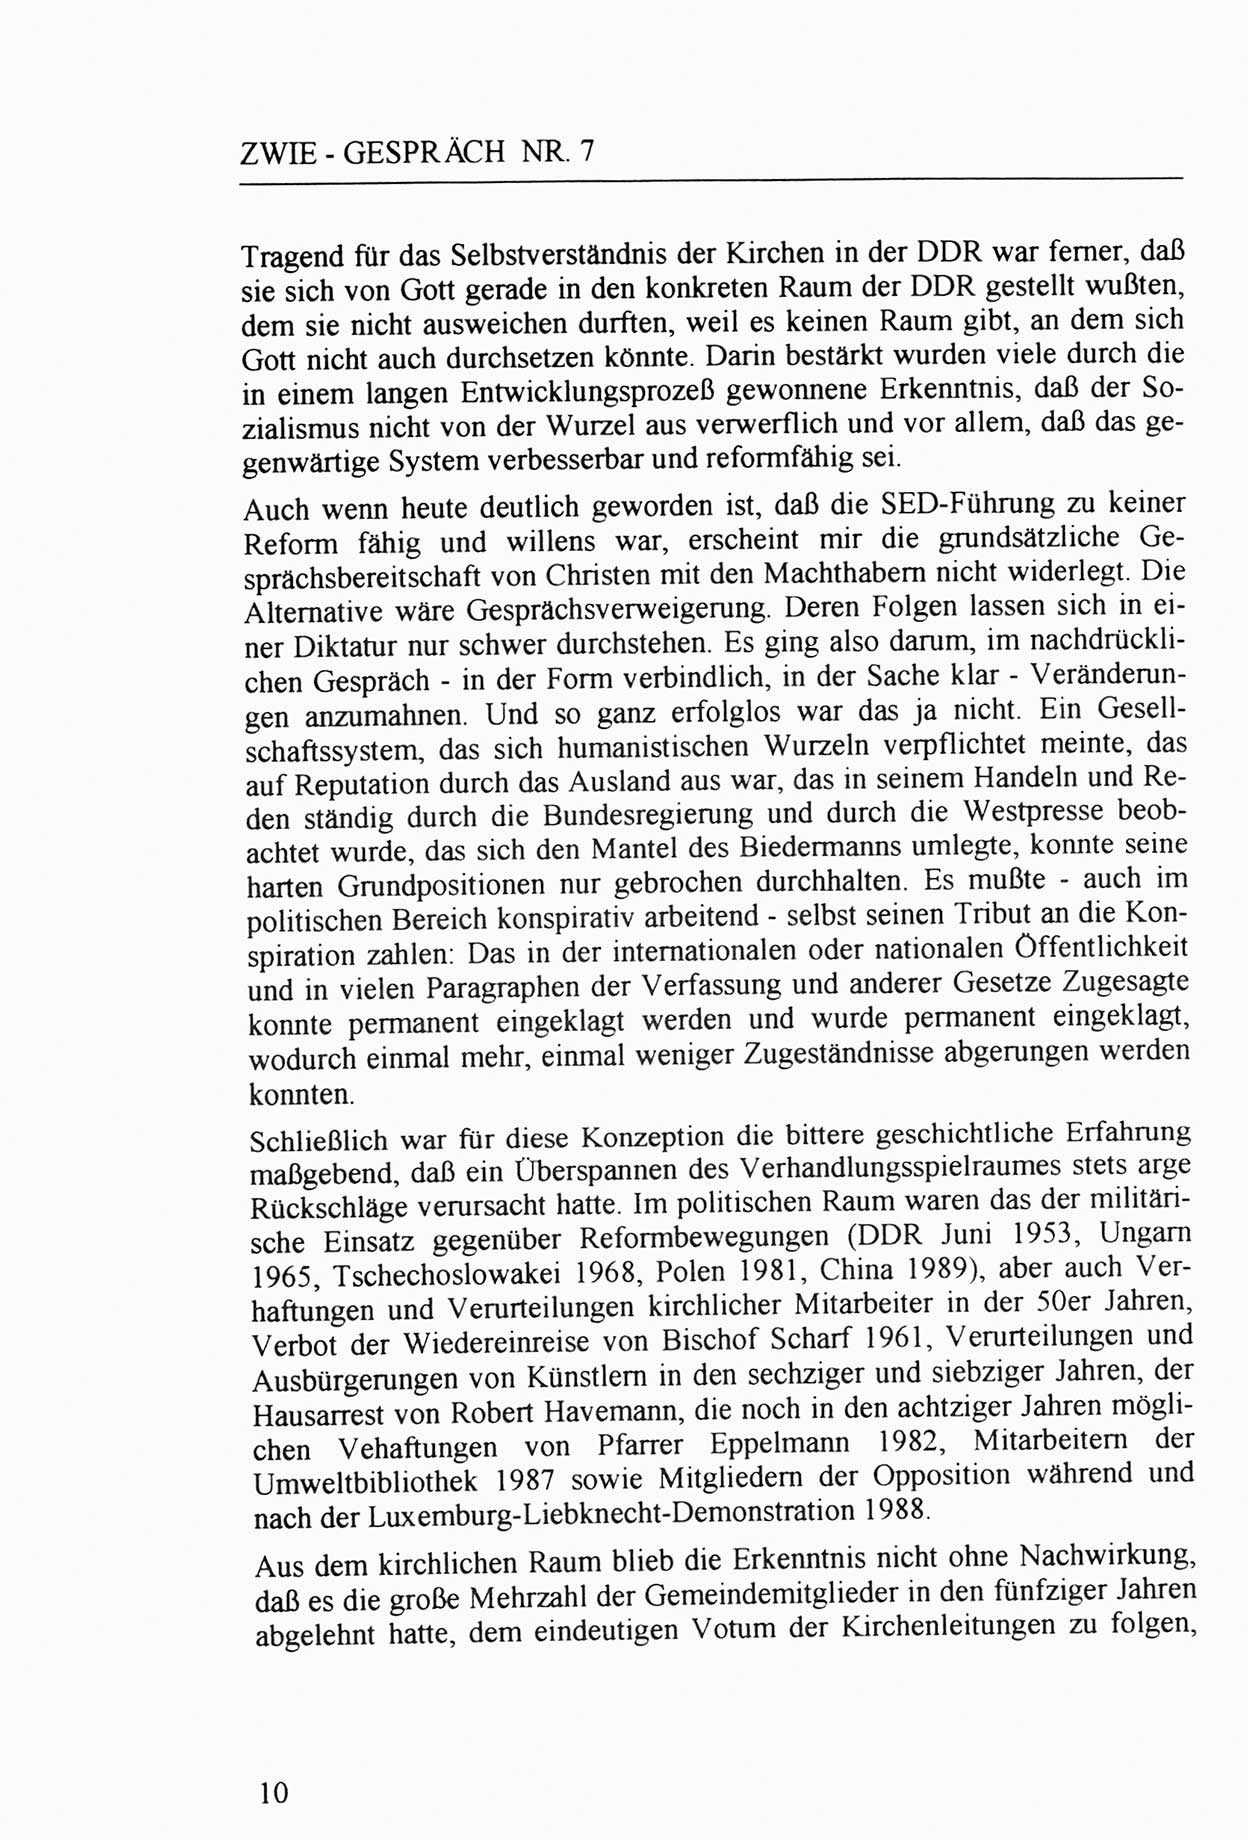 Zwie-Gespräch, Beiträge zur Aufarbeitung der Staatssicherheits-Vergangenheit [Deutsche Demokratische Republik (DDR)], Ausgabe Nr. 7, Berlin 1992, Seite 10 (Zwie-Gespr. Ausg. 7 1992, S. 10)